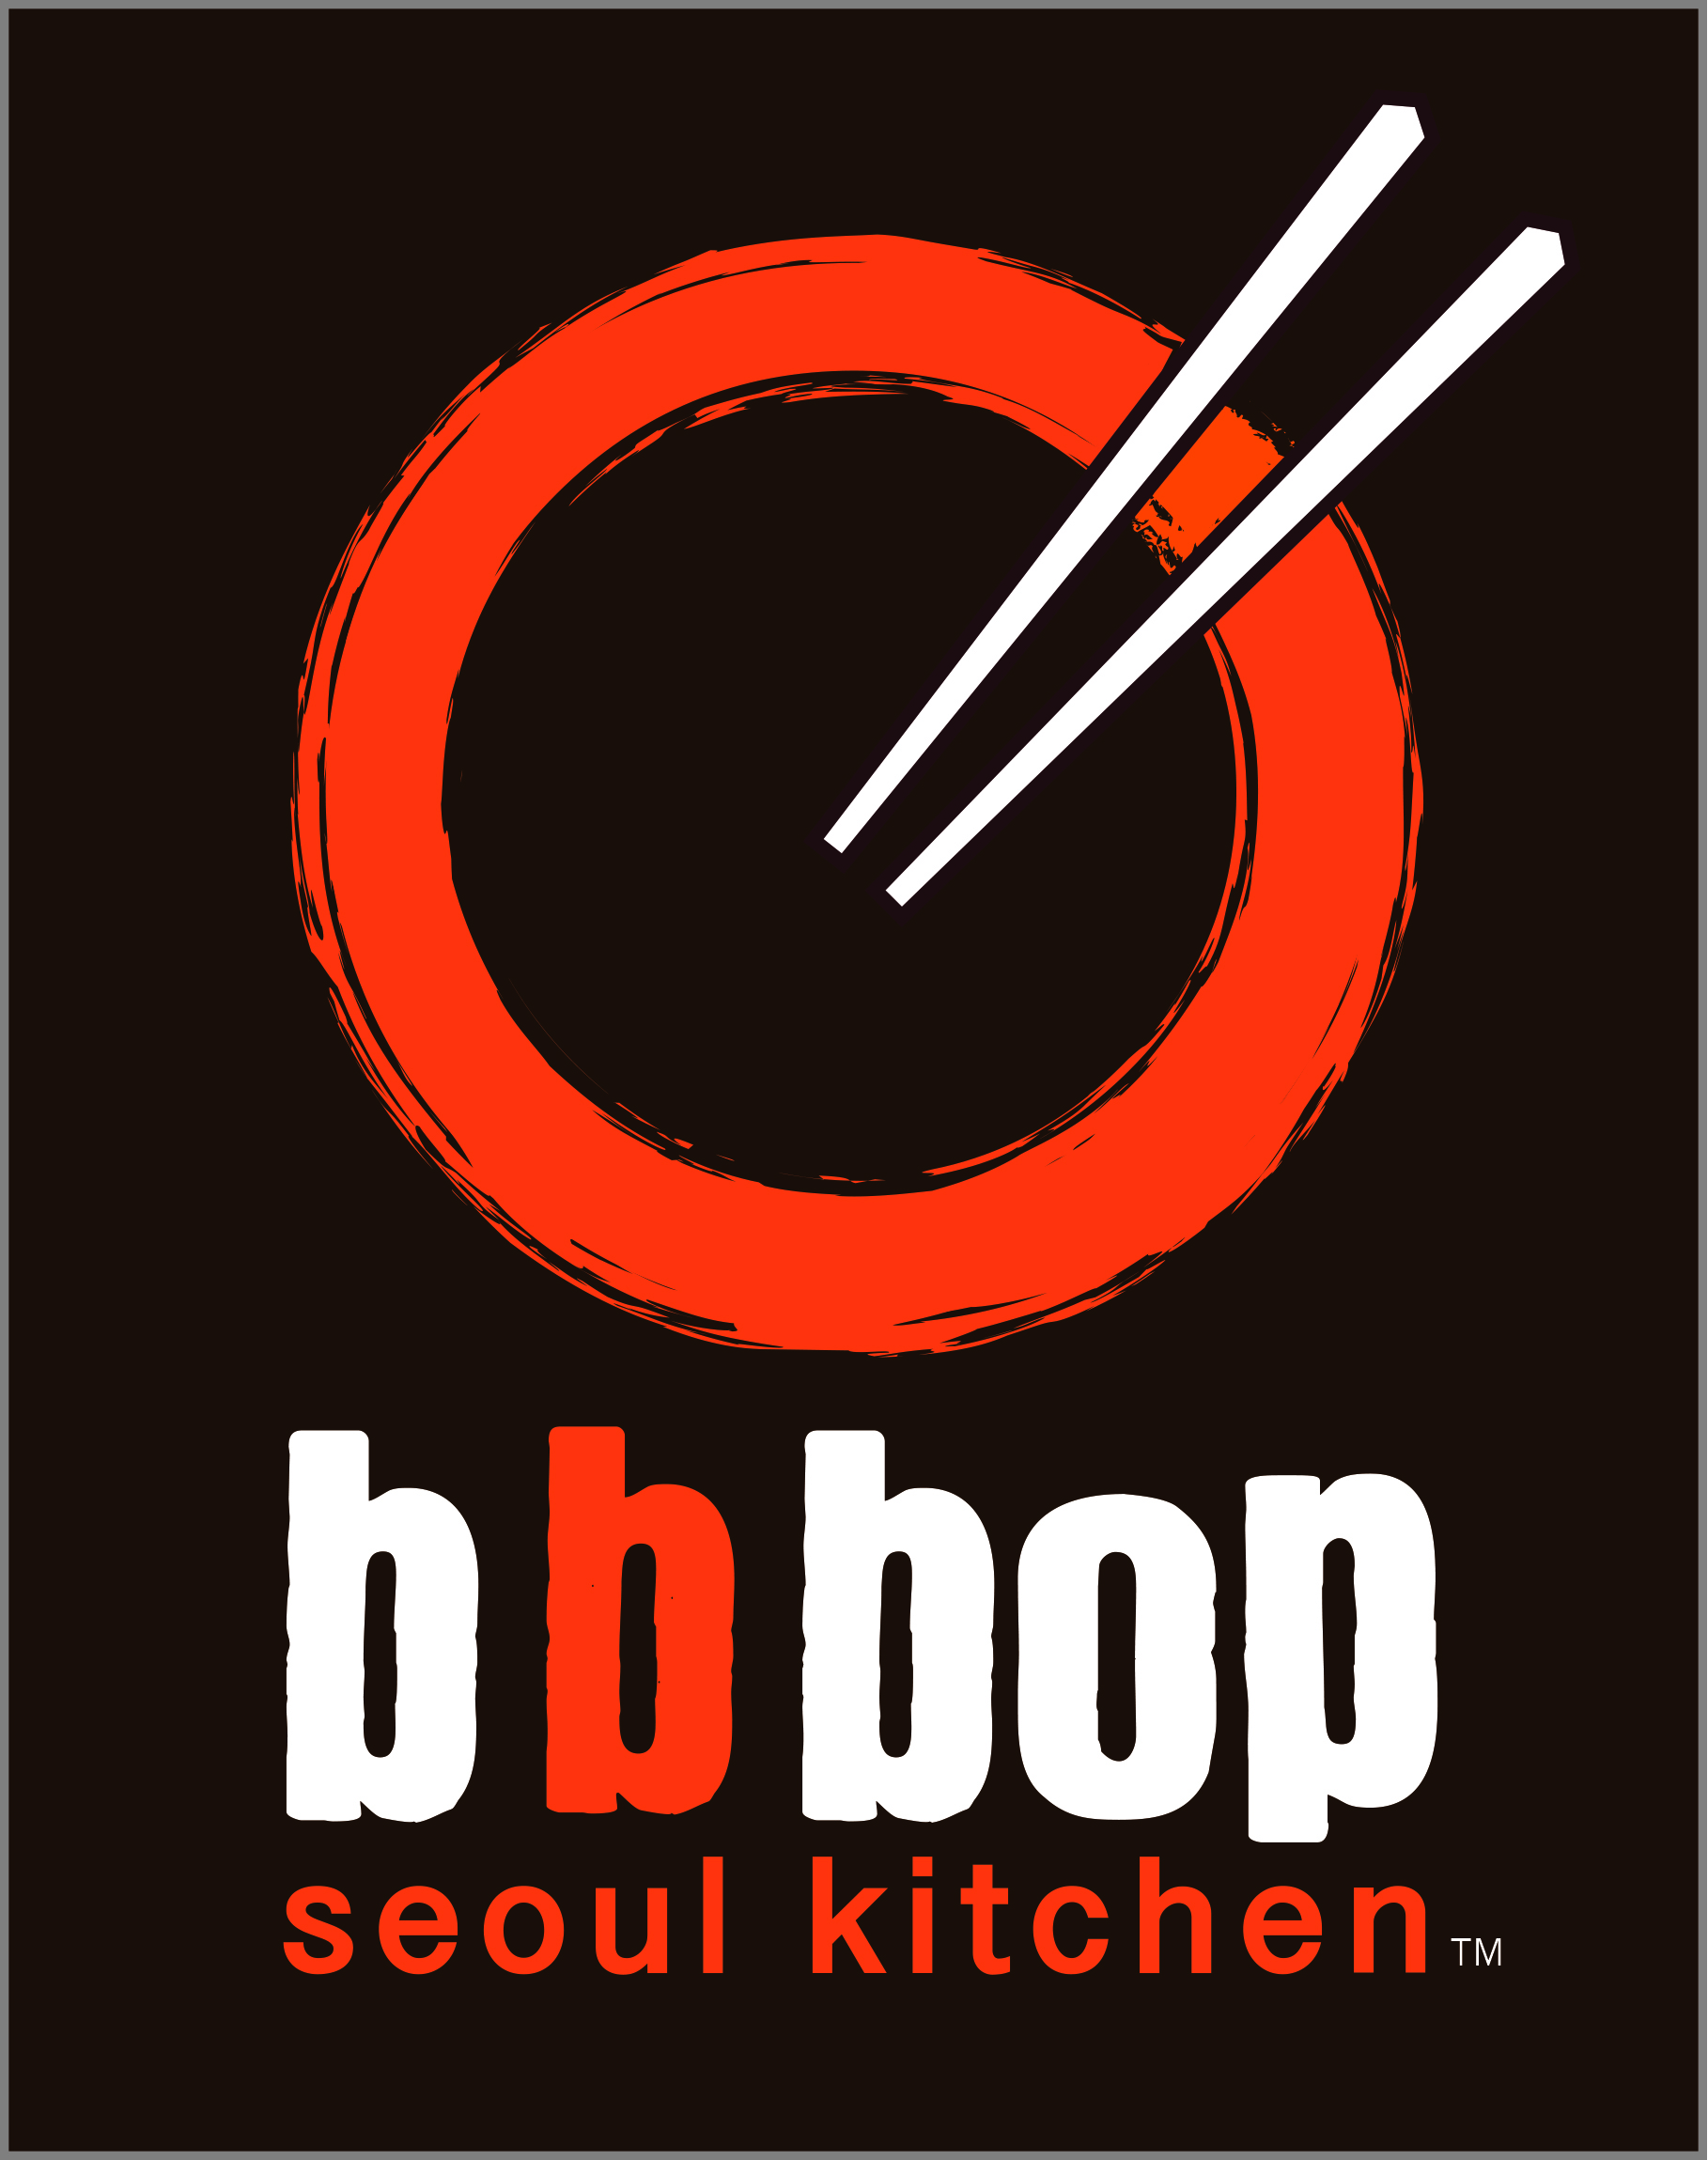 bbbop Seoul Kitchen logo